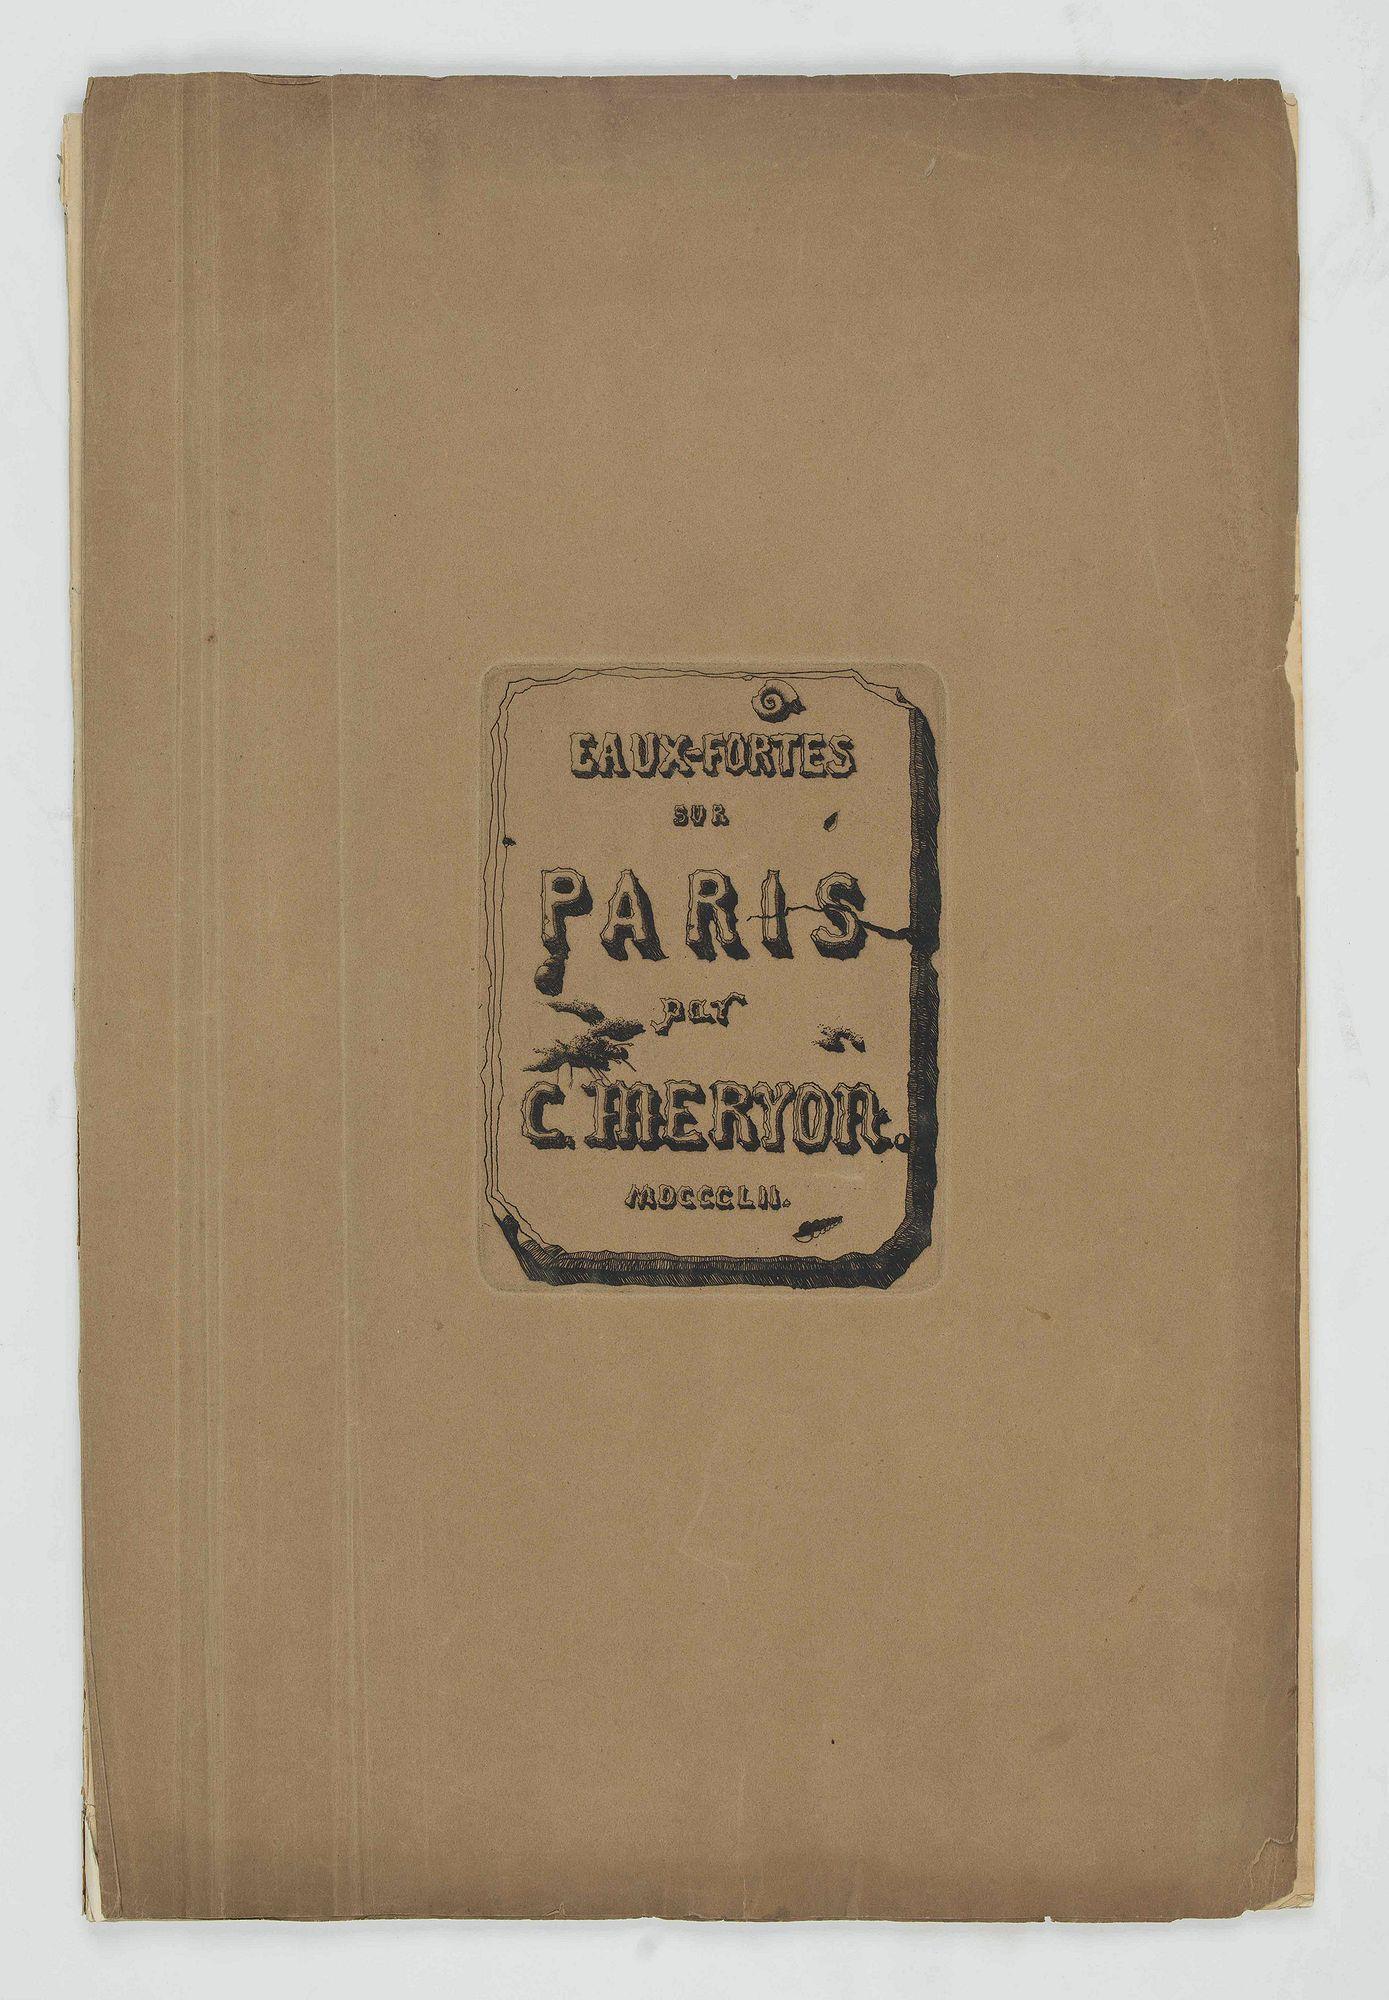 Eaux-fortes sur Paris, vers 1850-1854 - Print by Charles Meryon